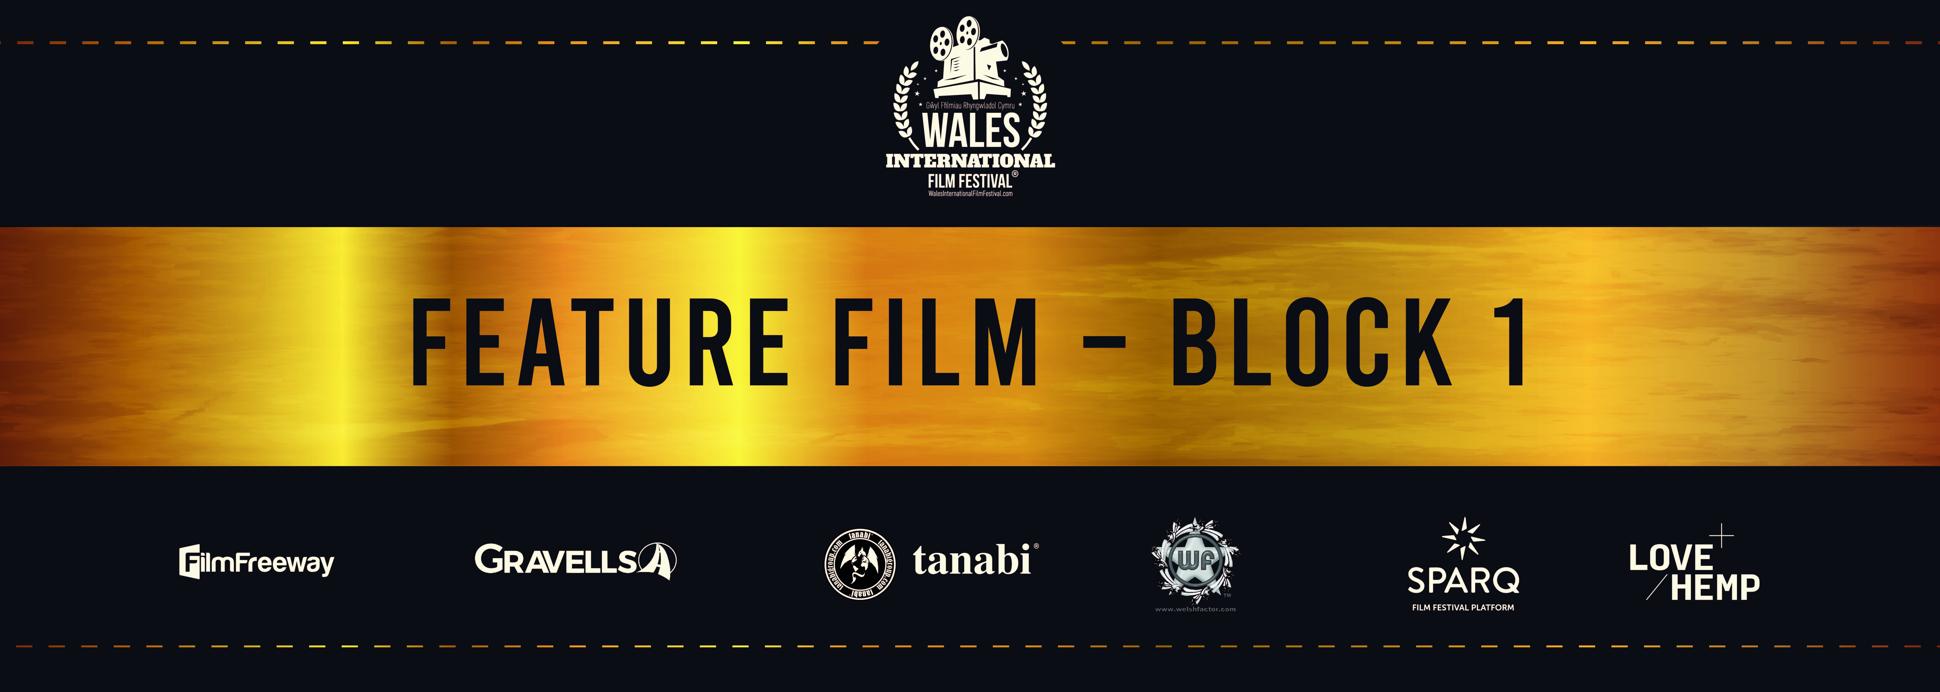 Feature Film - Block 1